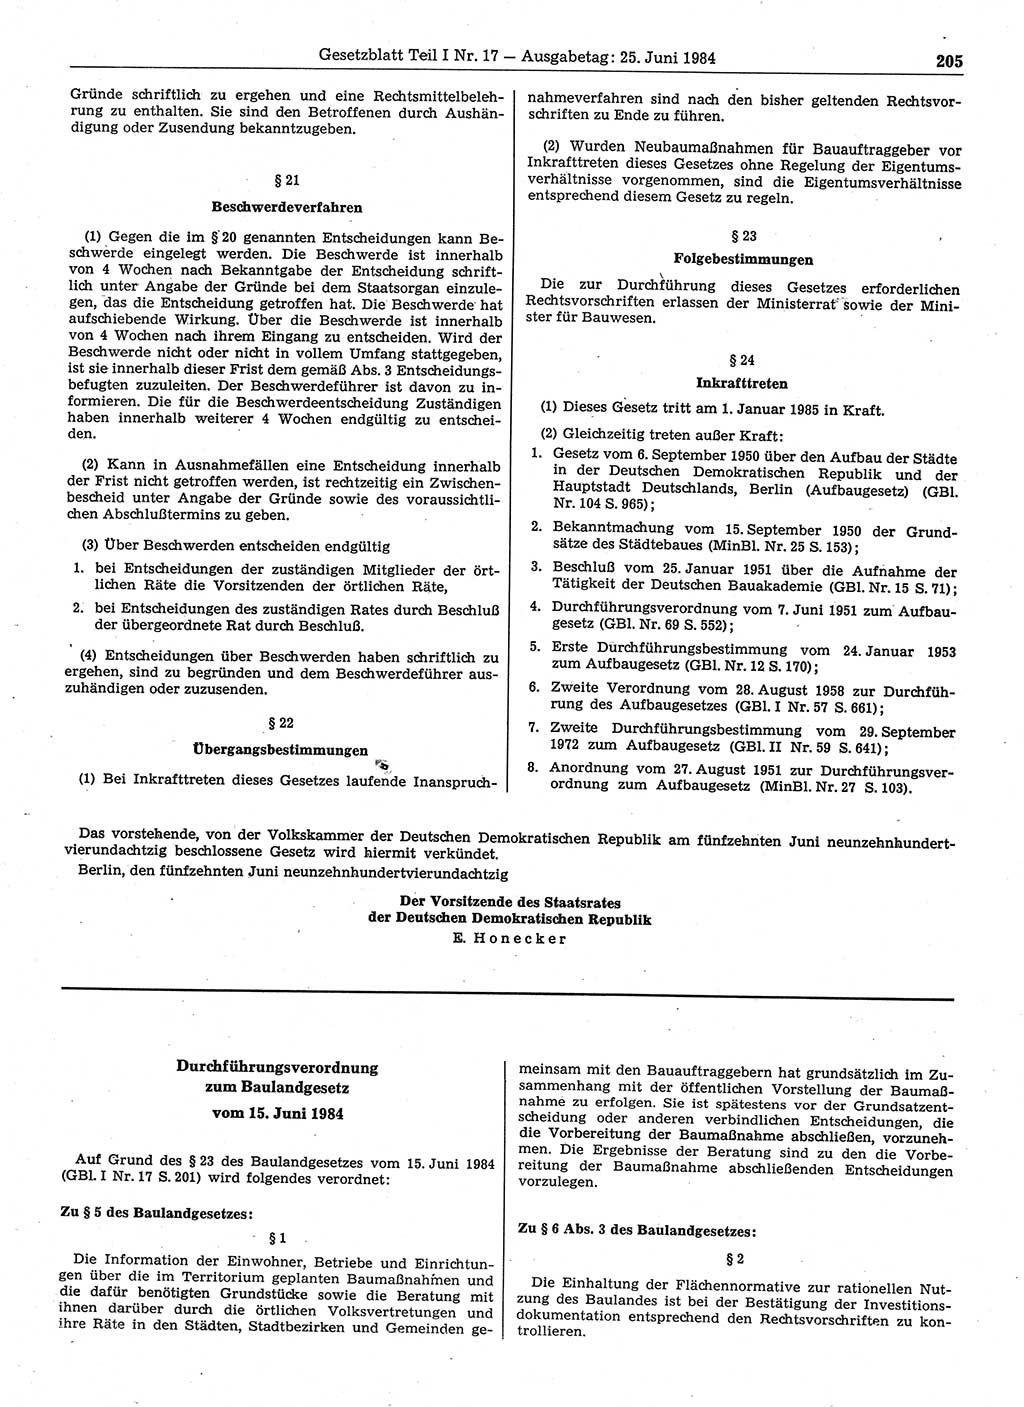 Gesetzblatt (GBl.) der Deutschen Demokratischen Republik (DDR) Teil Ⅰ 1984, Seite 205 (GBl. DDR Ⅰ 1984, S. 205)